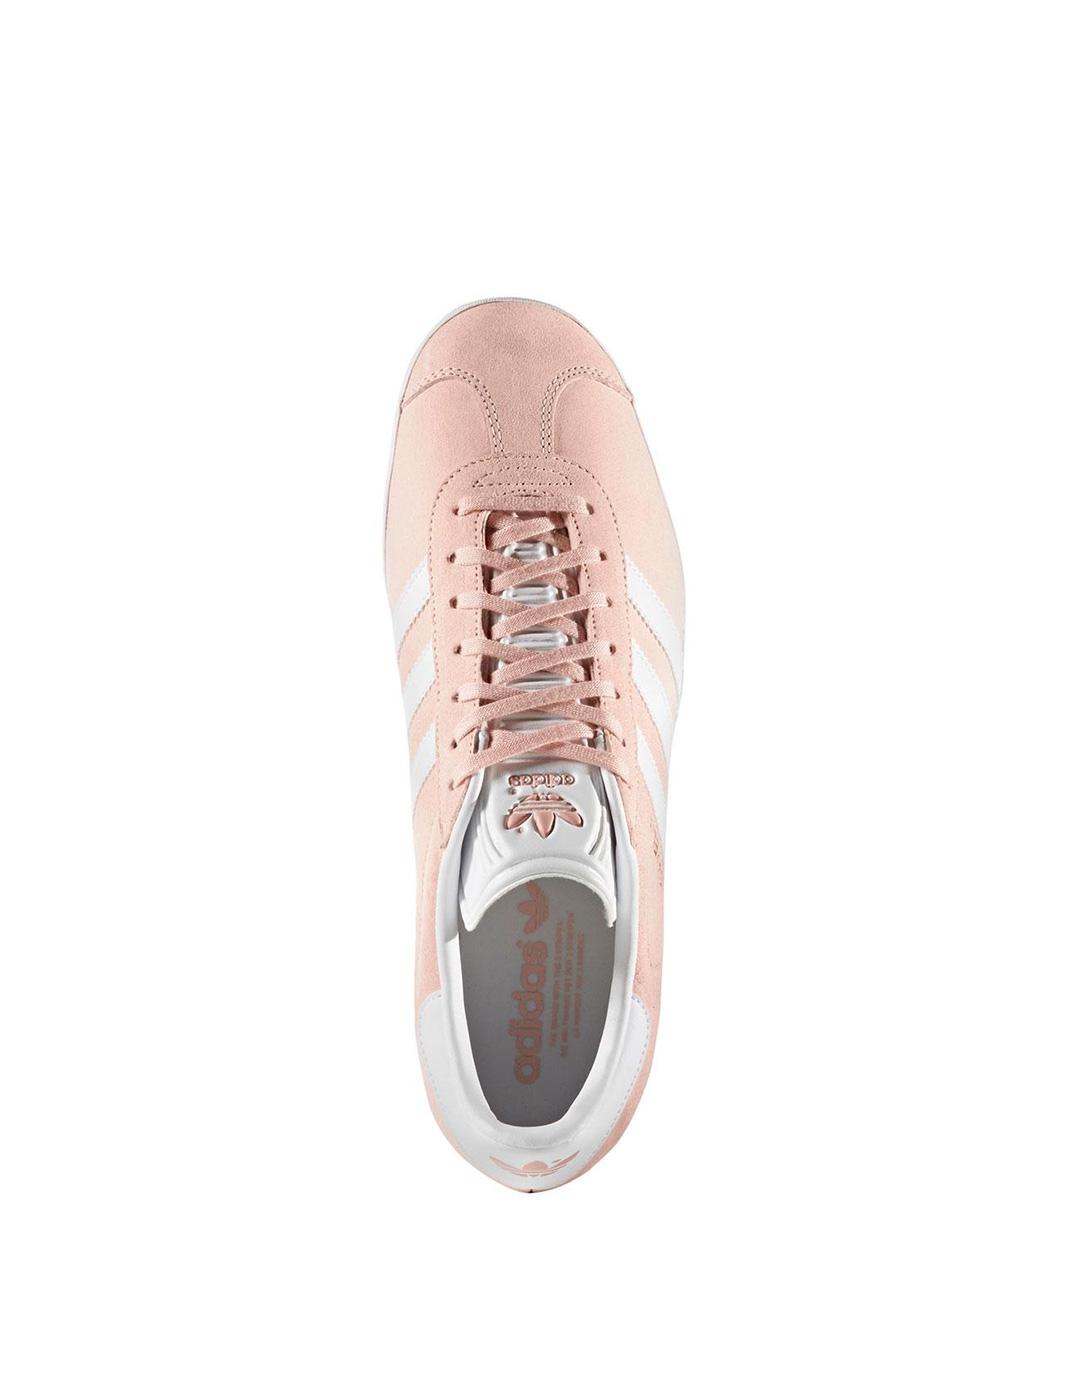 Zapatillas adidas Gazelle rosa Mujer